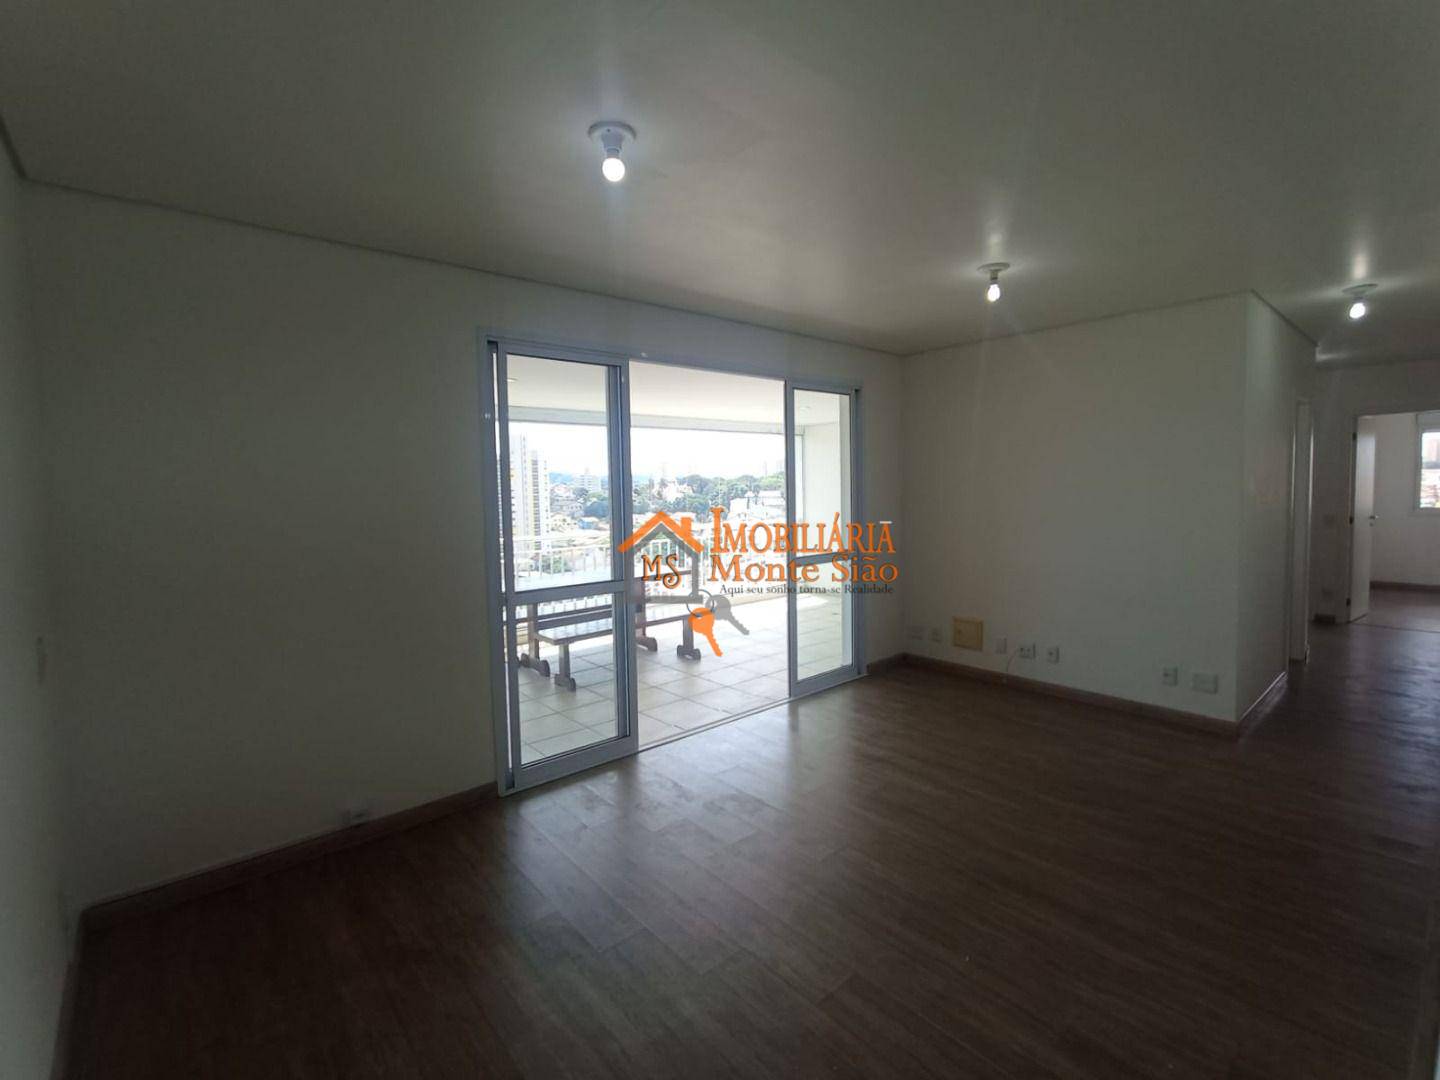 Apartamento com 4 dormitórios à venda, 114 m² por R$ 1.200.000,00 - Vila Galvão - Guarulhos/SP